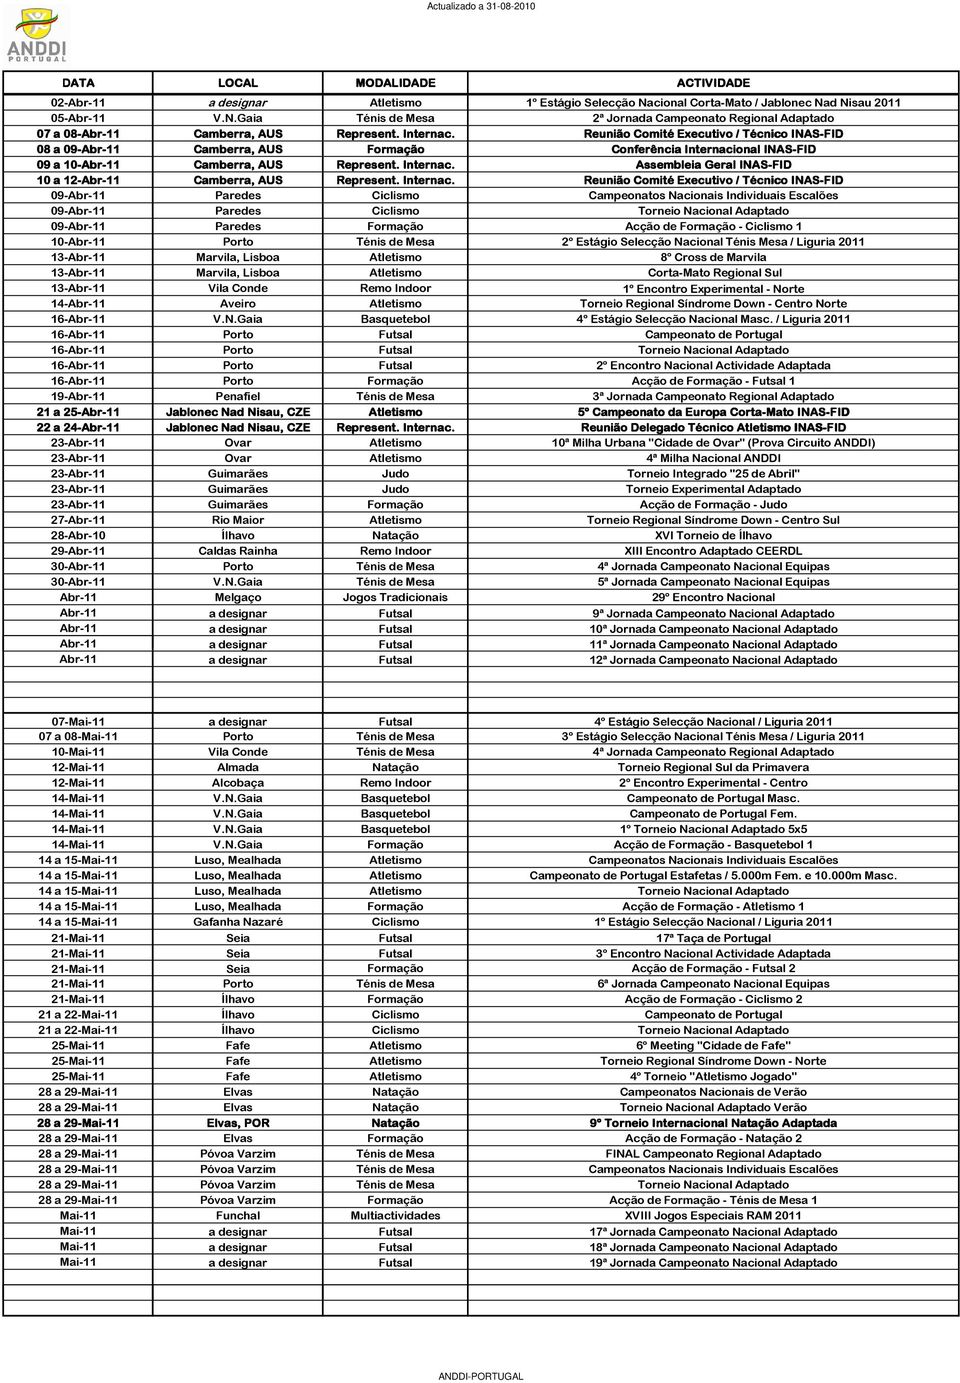 d Nisau 2011 05-Abr-11 V.N.Gaia Ténis de Mesa 2ª Jornada Campeonato Regional Adaptado 07 a 08-Abr-11 Camberra, AUS 08 a 09-Abr-11 Camberra, AUS Formação Conferência Internacional INAS-FID 09 a